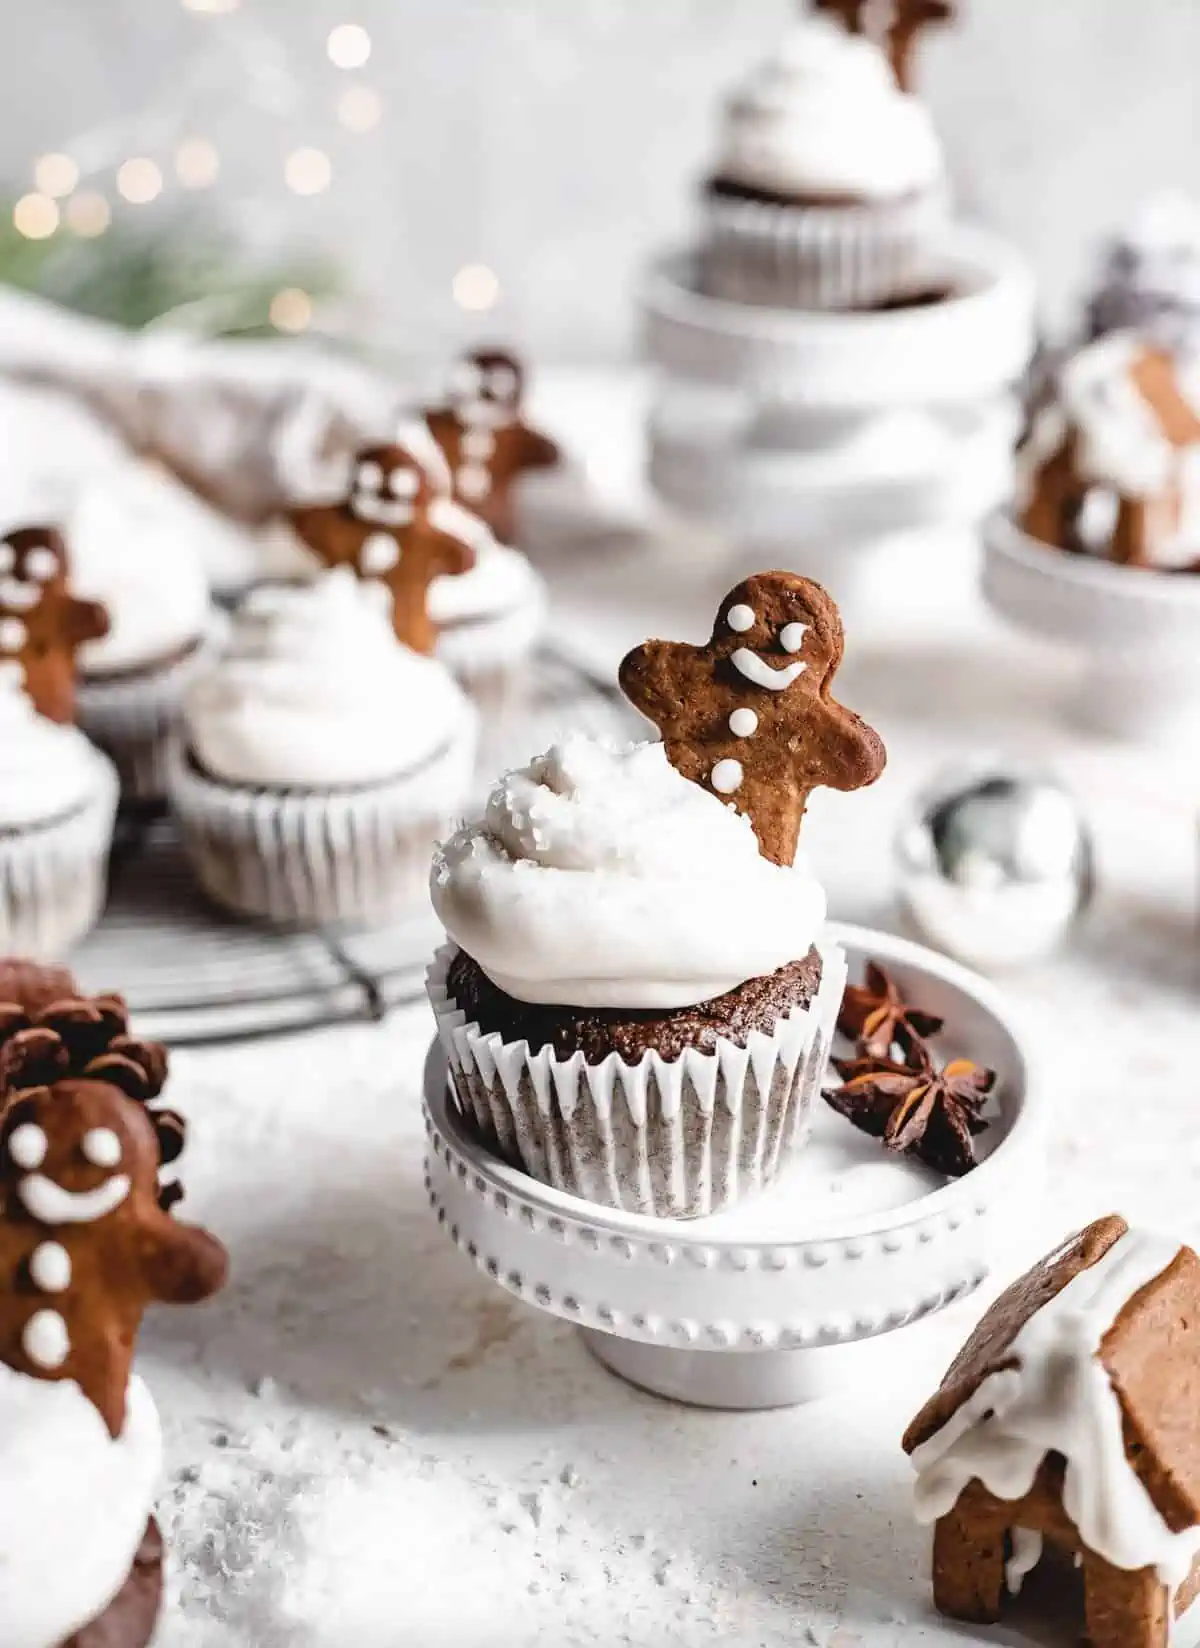 Cute gingerbread men cupcakes from popular vegan blog Banana Diaries. 